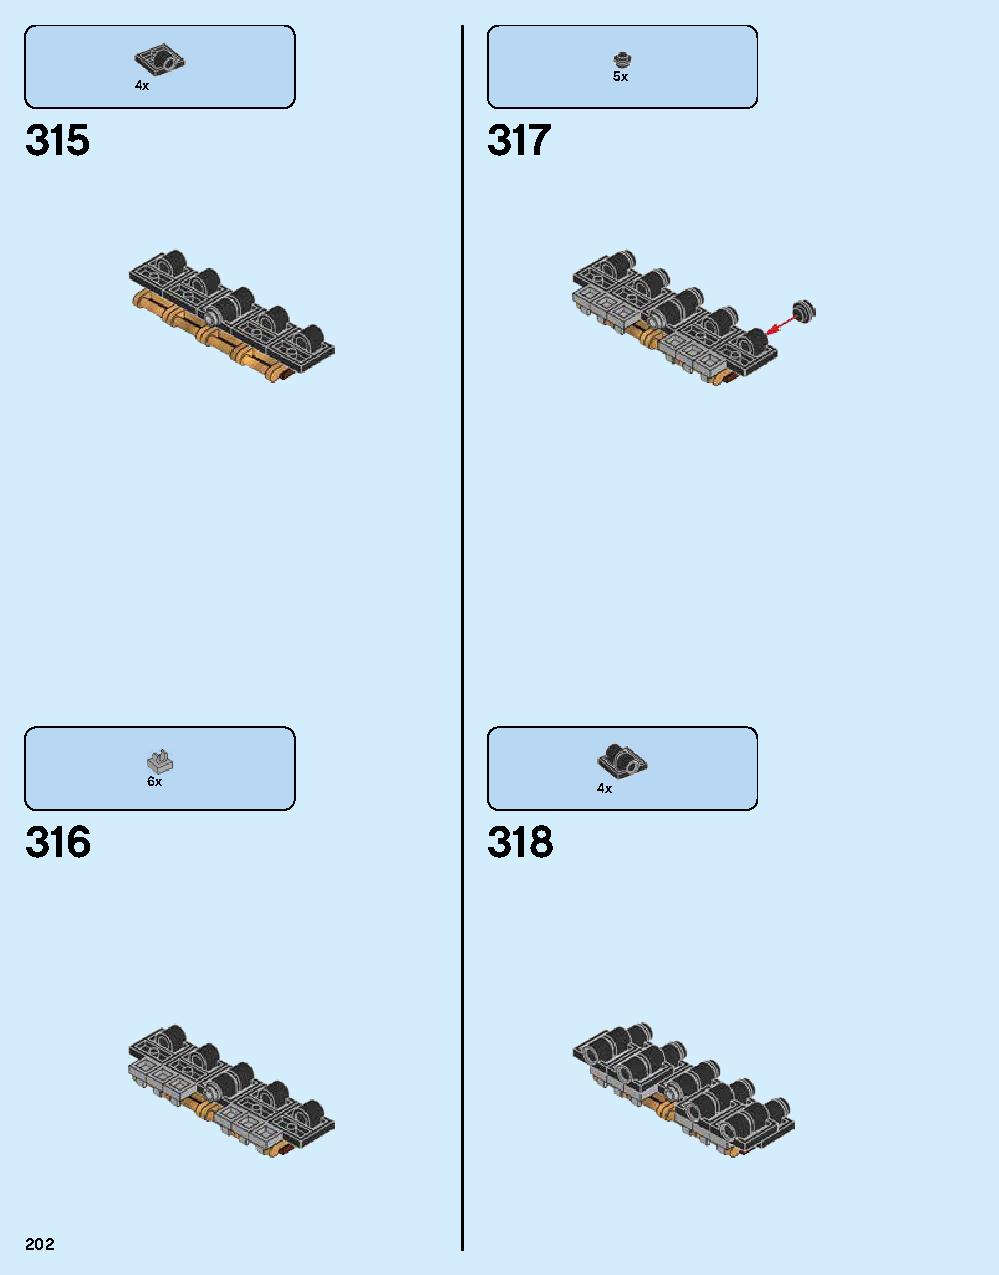 ニンジャゴー シティ 70620 レゴの商品情報 レゴの説明書・組立方法 202 page